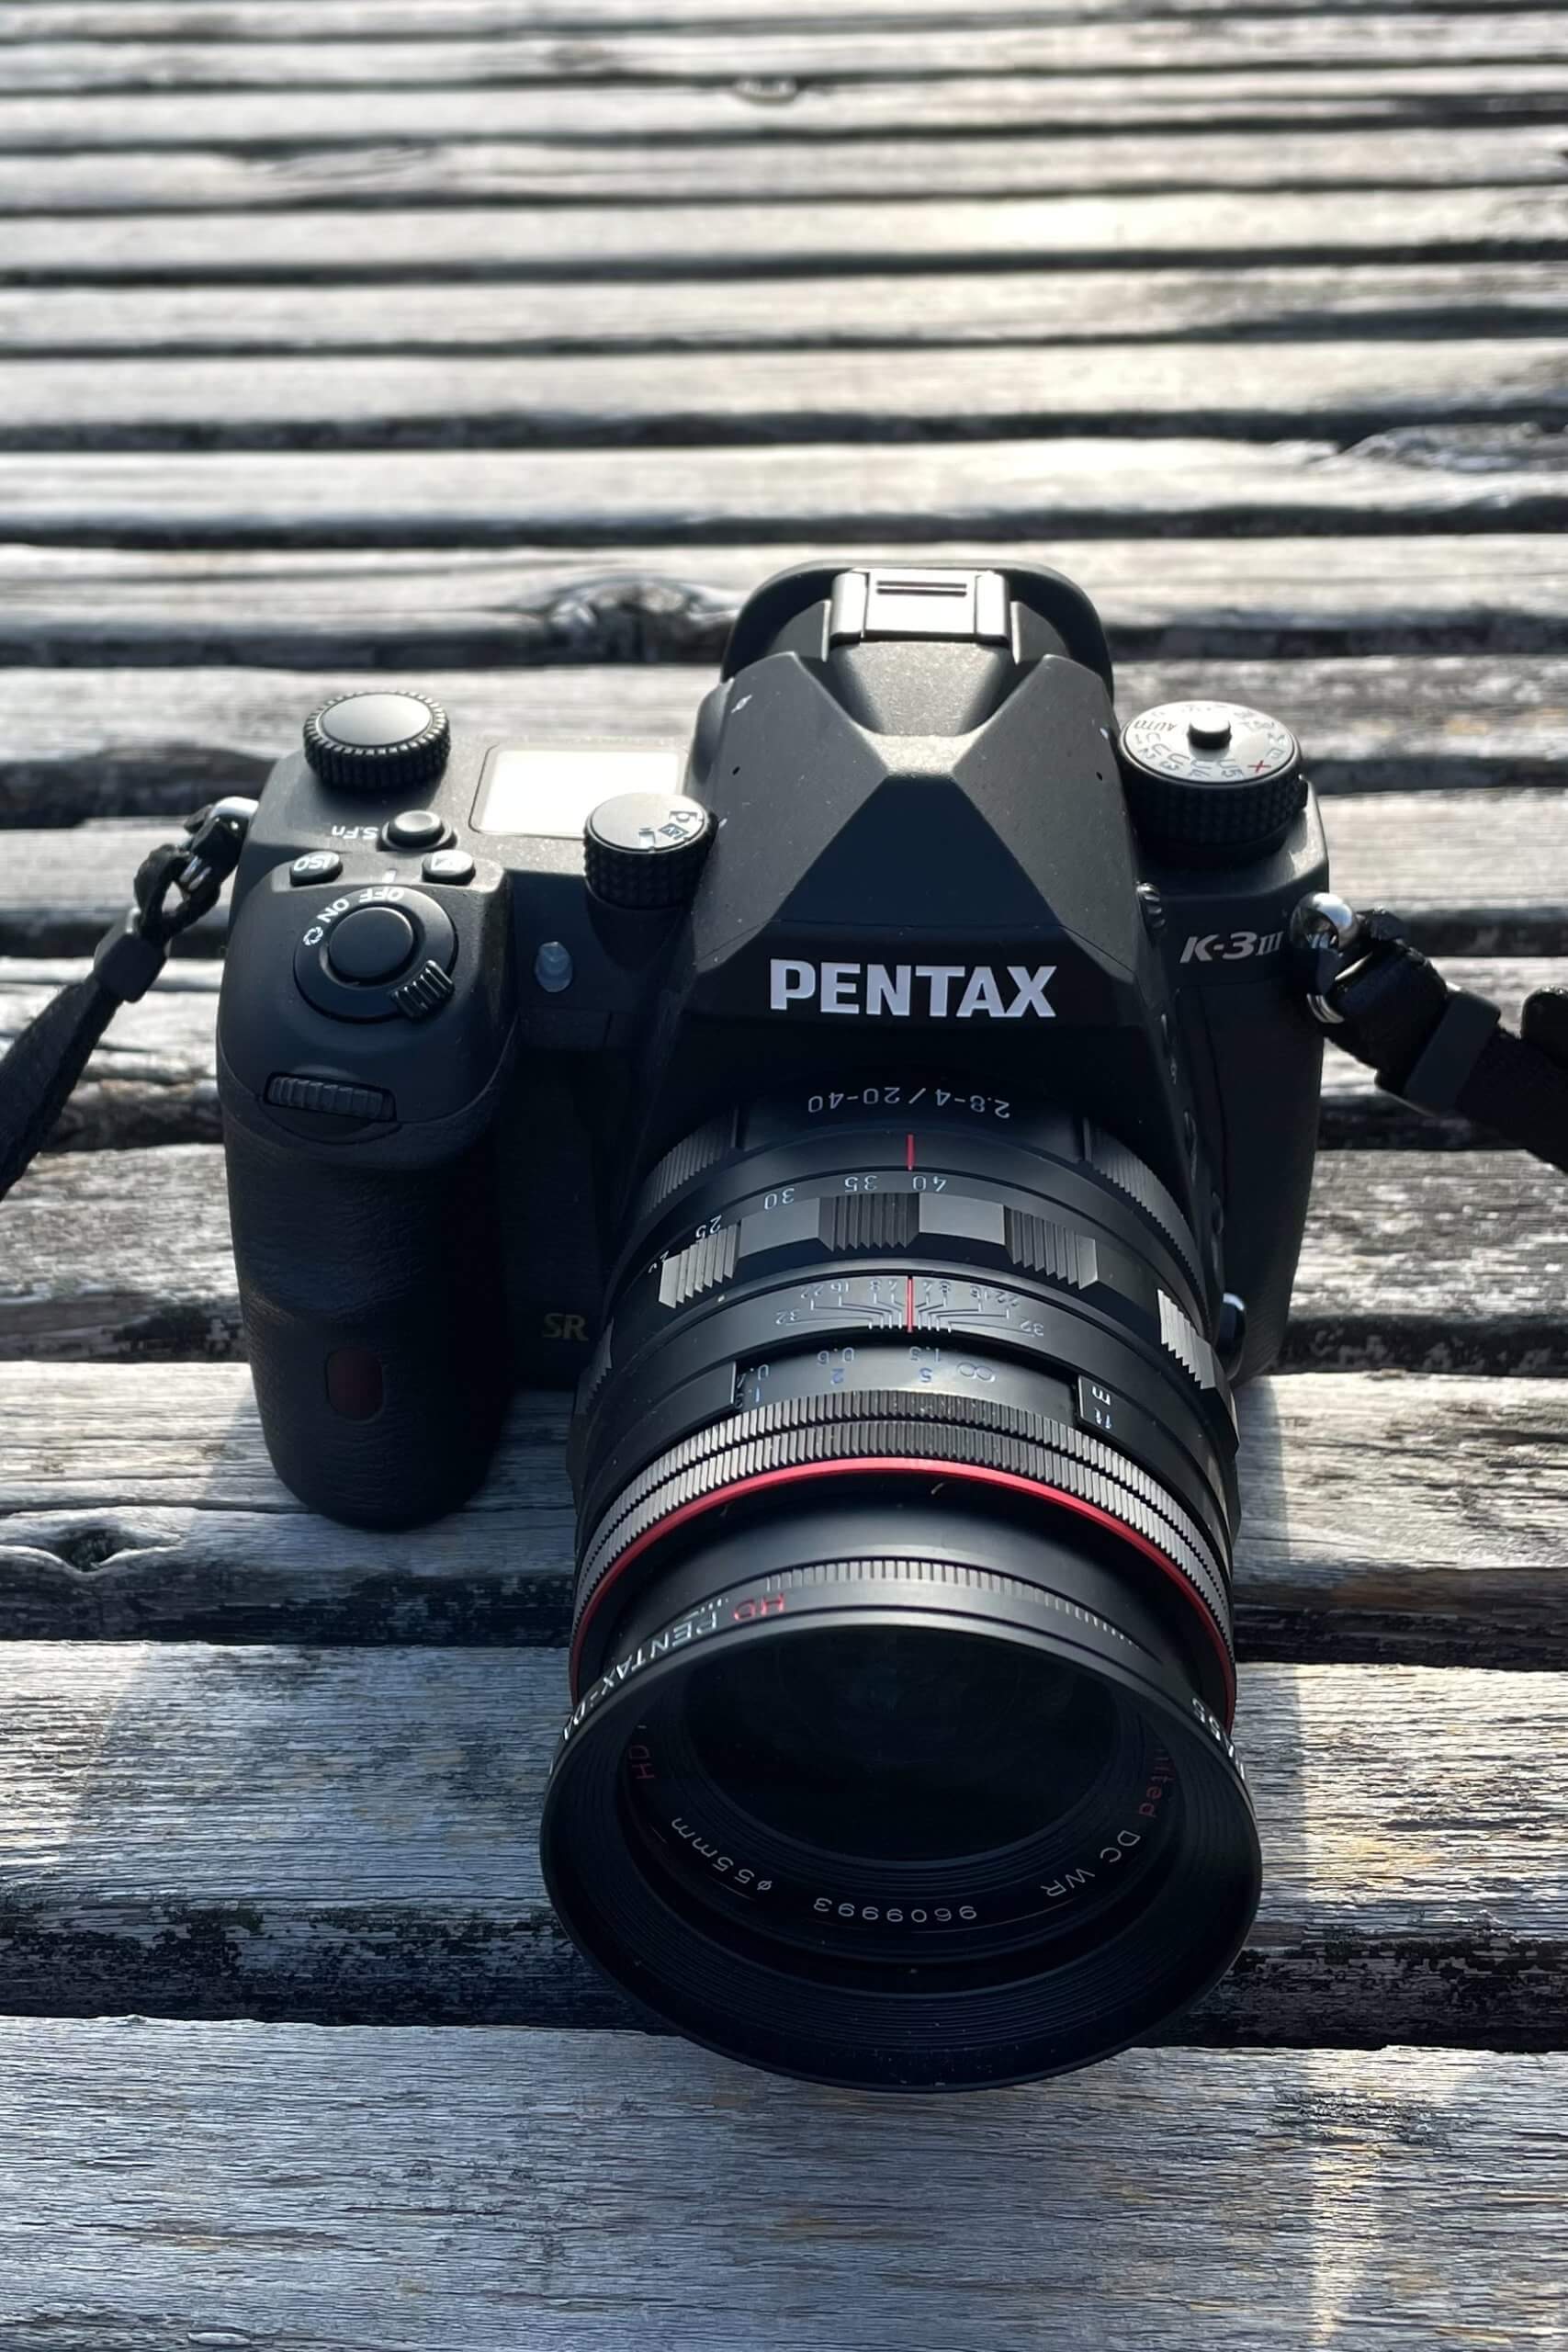 HD PENTAX-DA 20-40mmF2.8-4ED Limited DC WR ブラック 標準ズーム